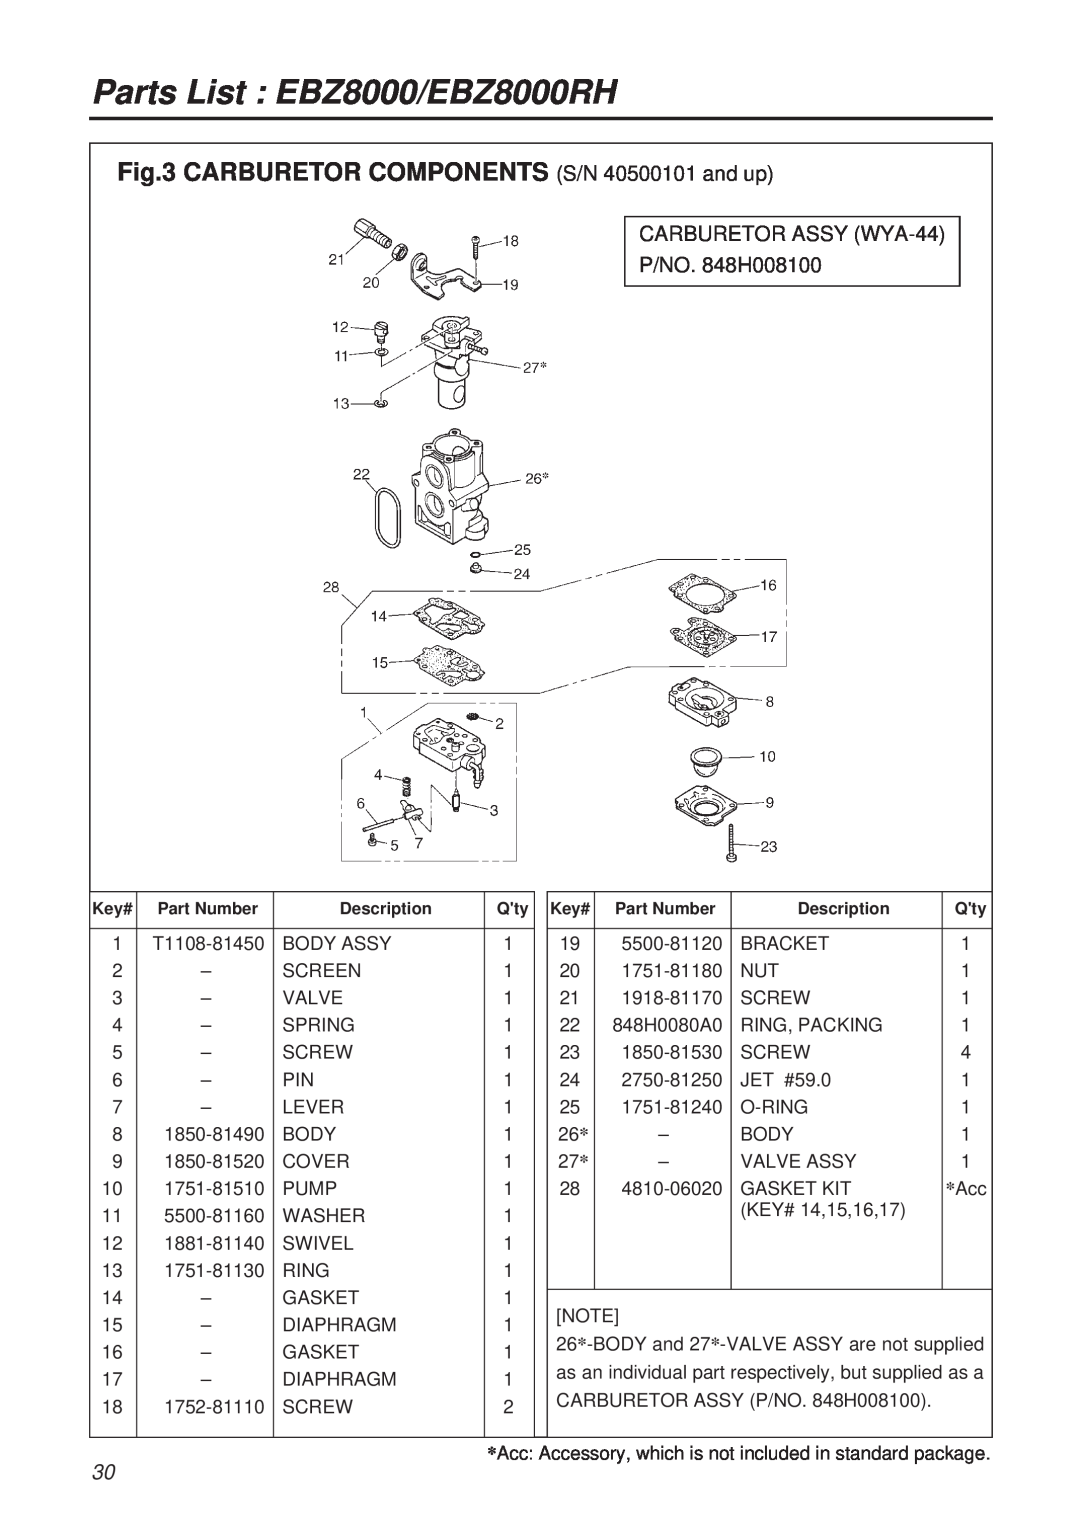 RedMax CARBURETOR COMPONENTS S/N 40500101 and up, Parts List EBZ8000/EBZ8000RH, CARBURETOR ASSY WYA-44 P/NO. 848H008100 